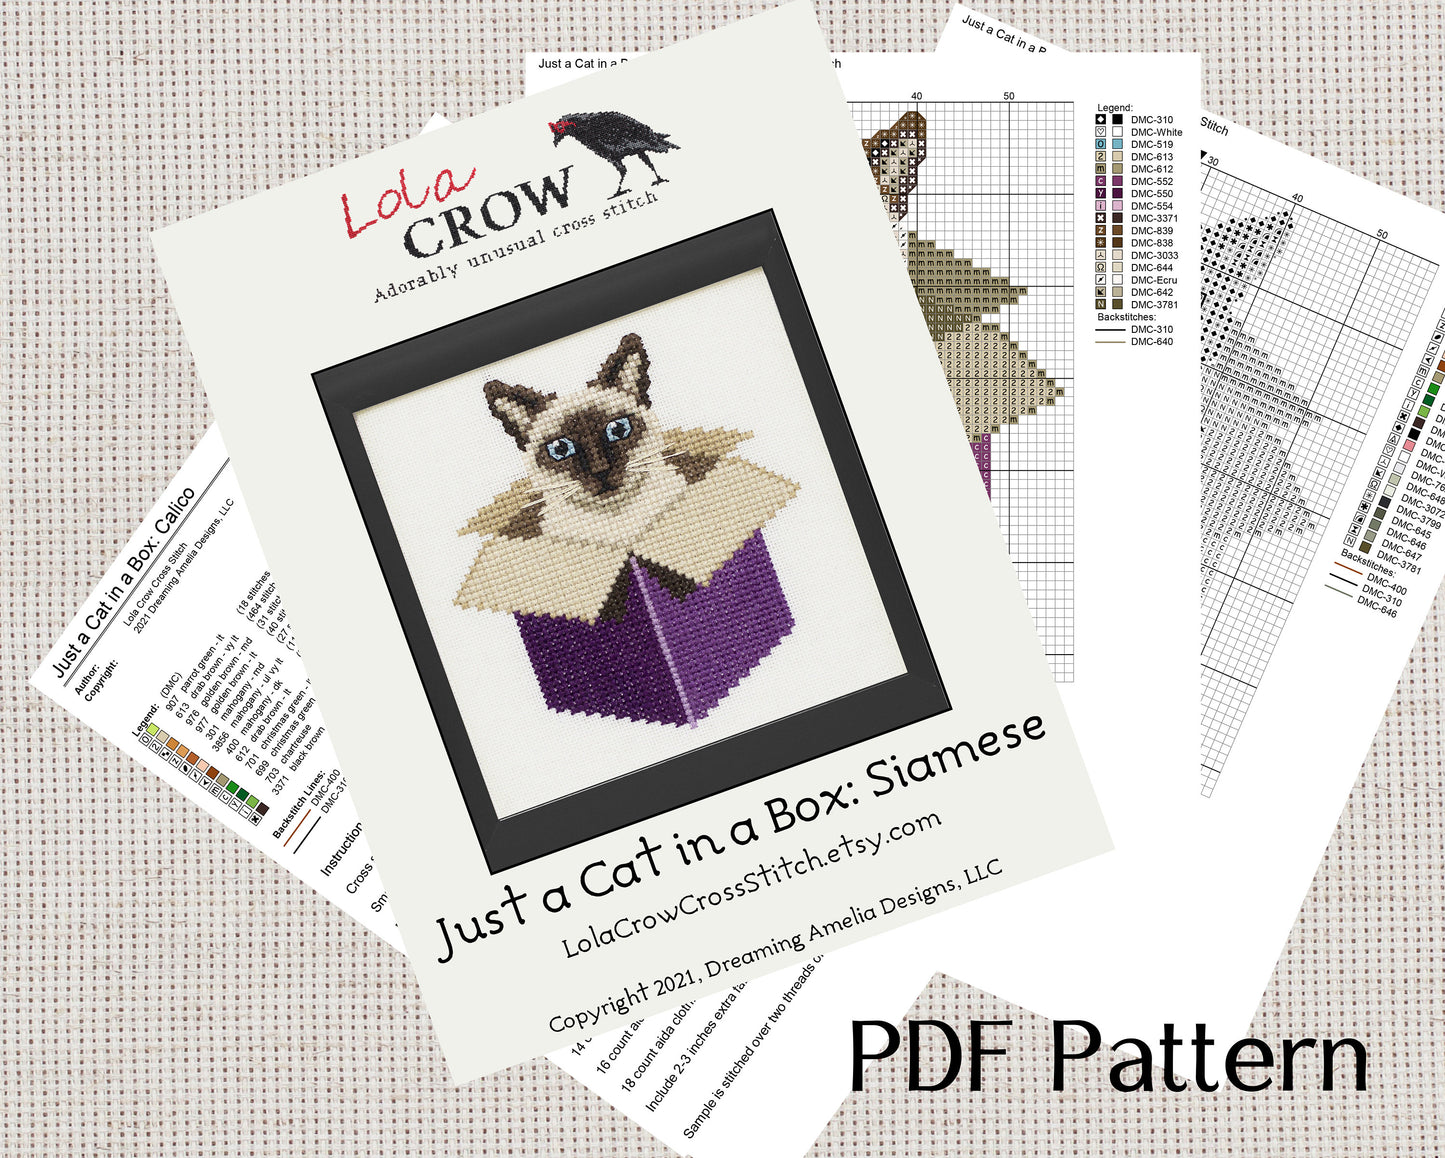 Just a Cat in a Box: Siamese - Digital PDF Cross Stitch Pattern